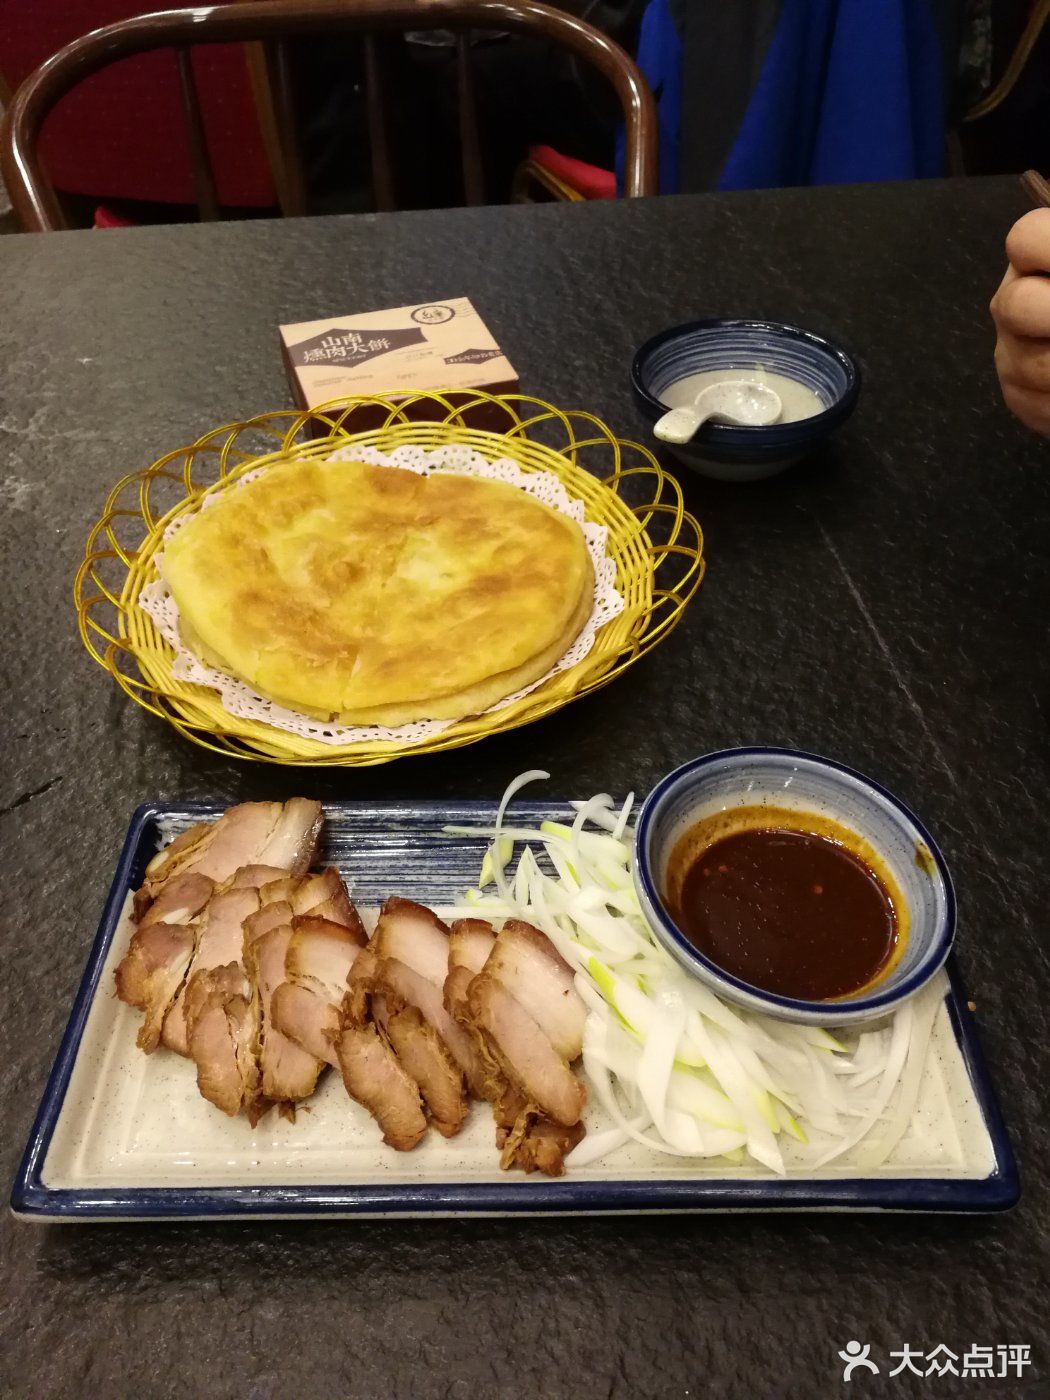          山南熏肉大饼(金地店)